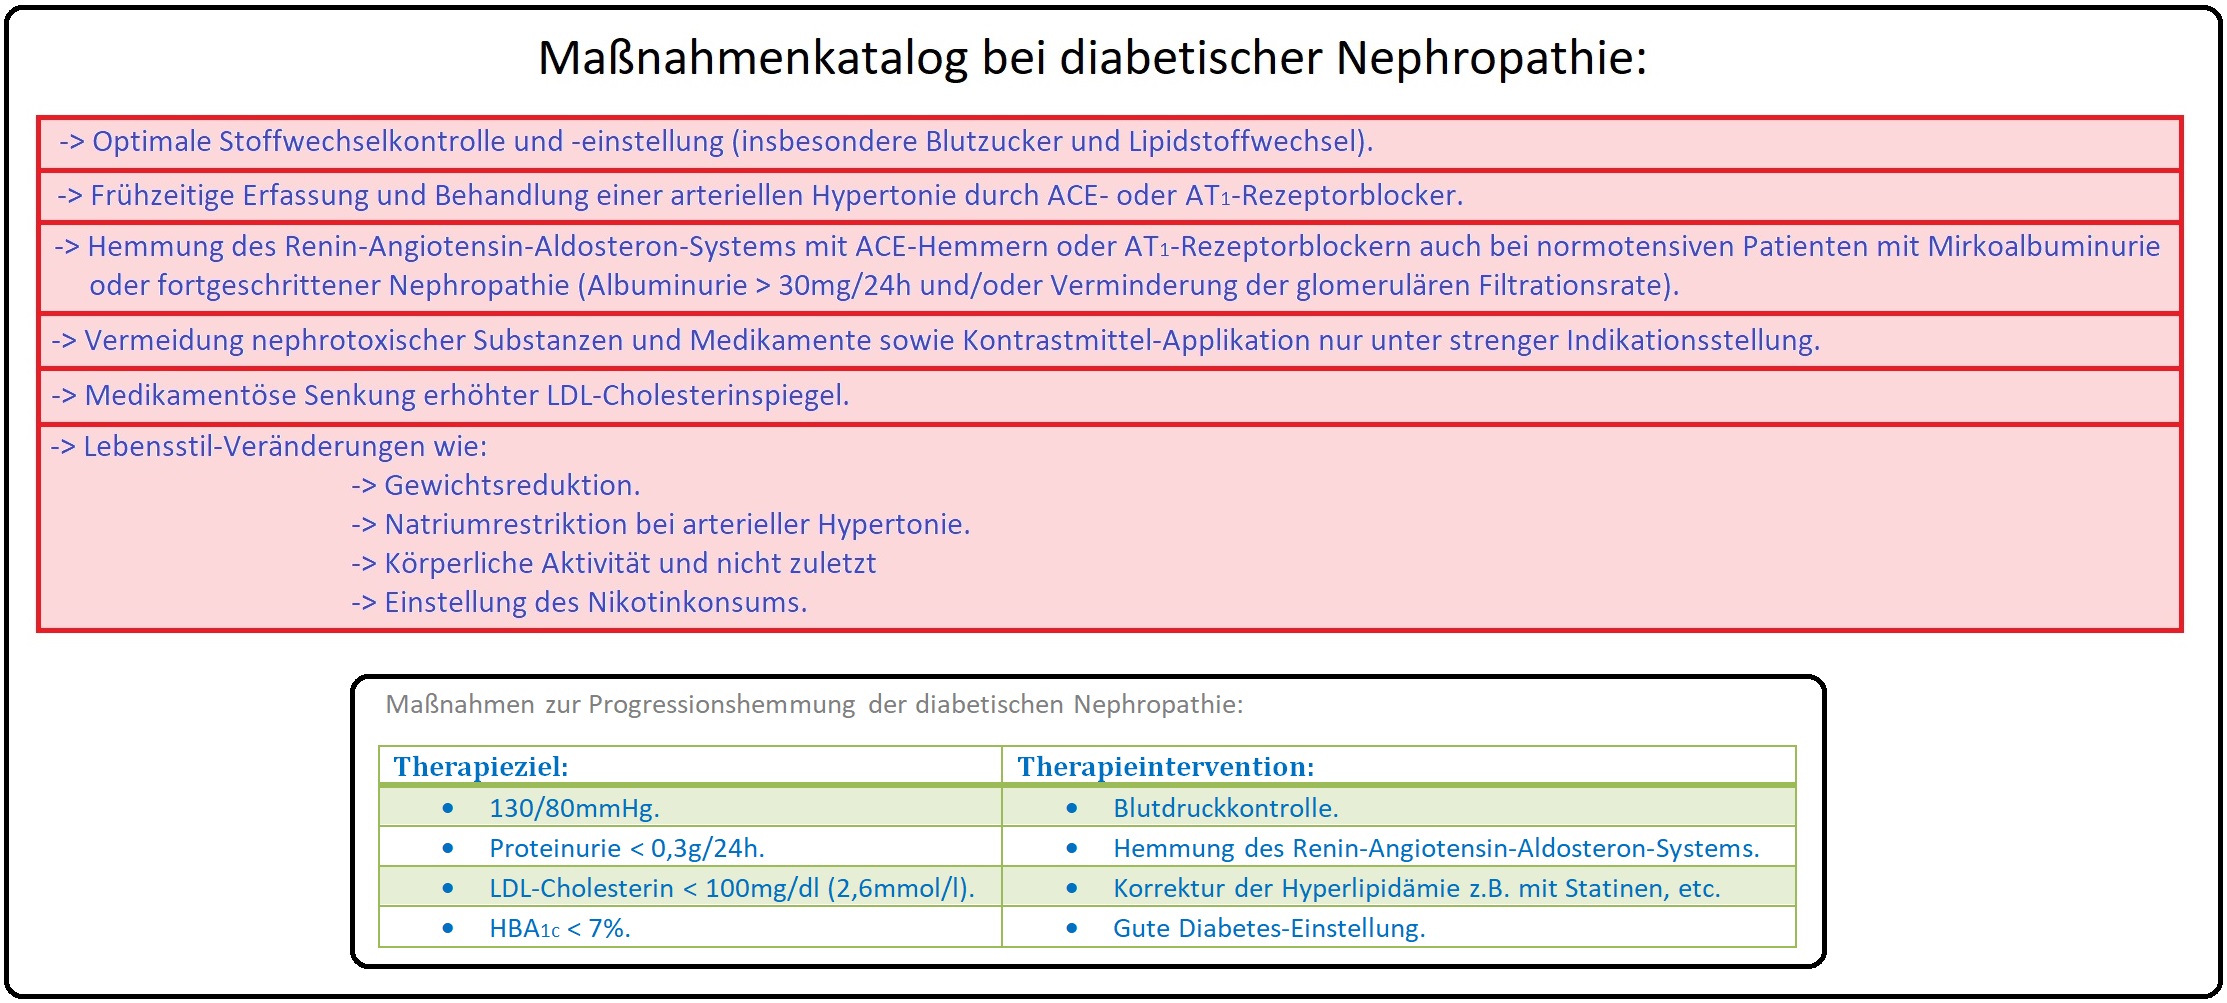 1142 Maßnahmenkatalog der diabetischen Nephropathie